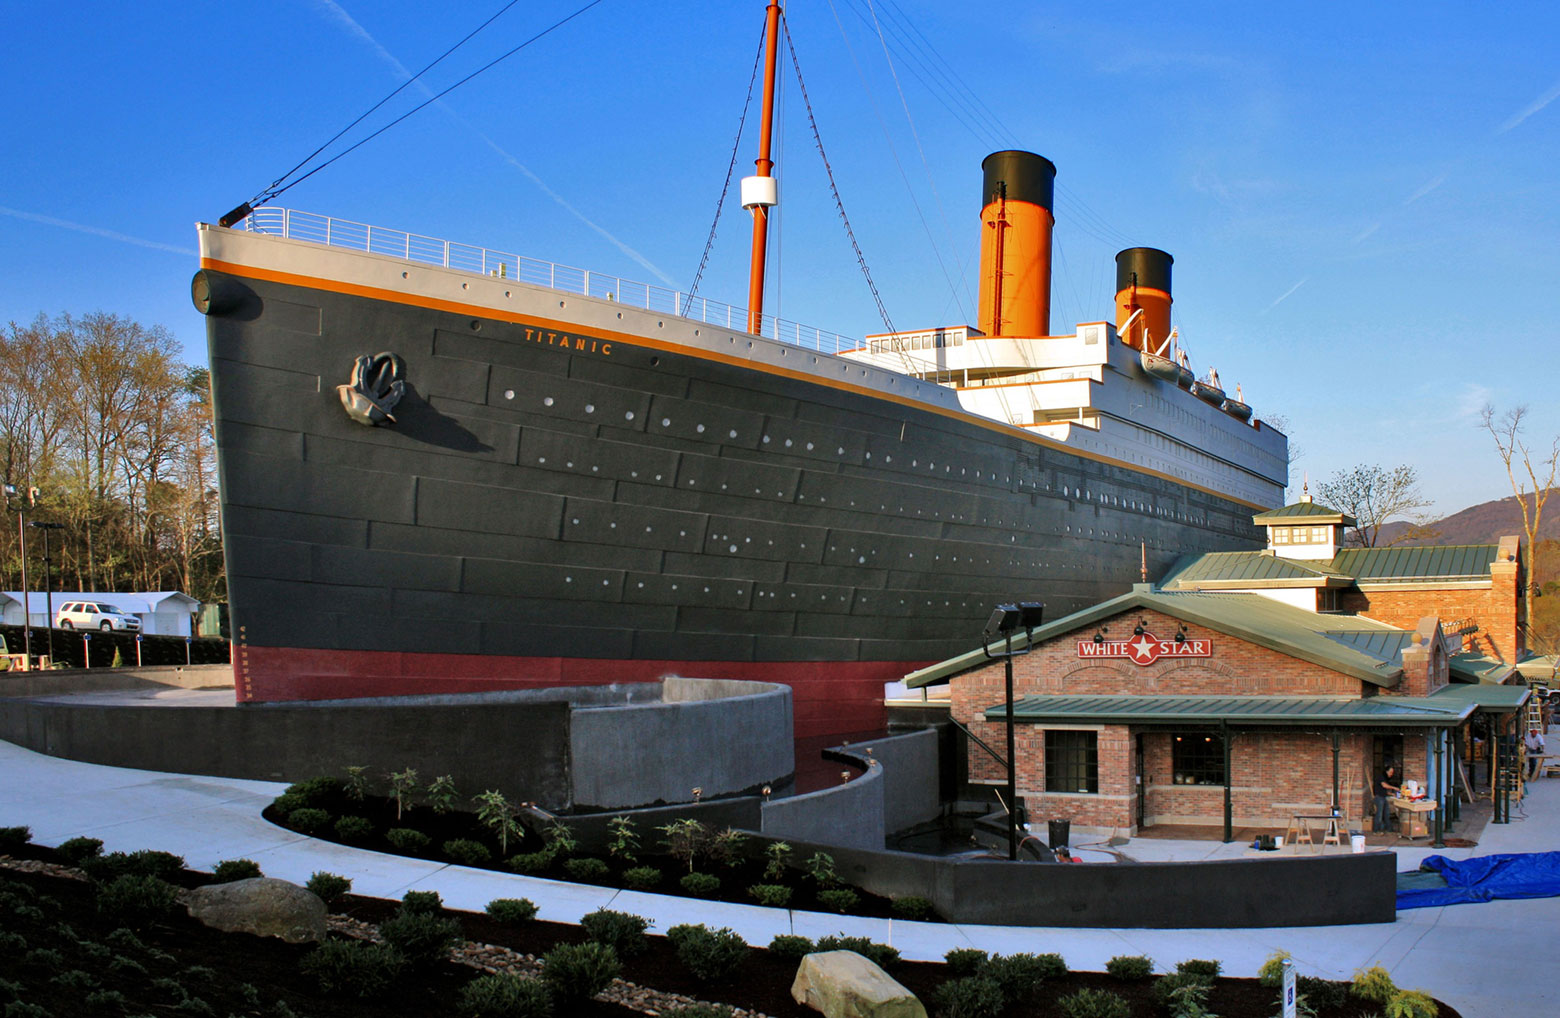 Visit the Titanic Museum During Your Gatlinburg Trip